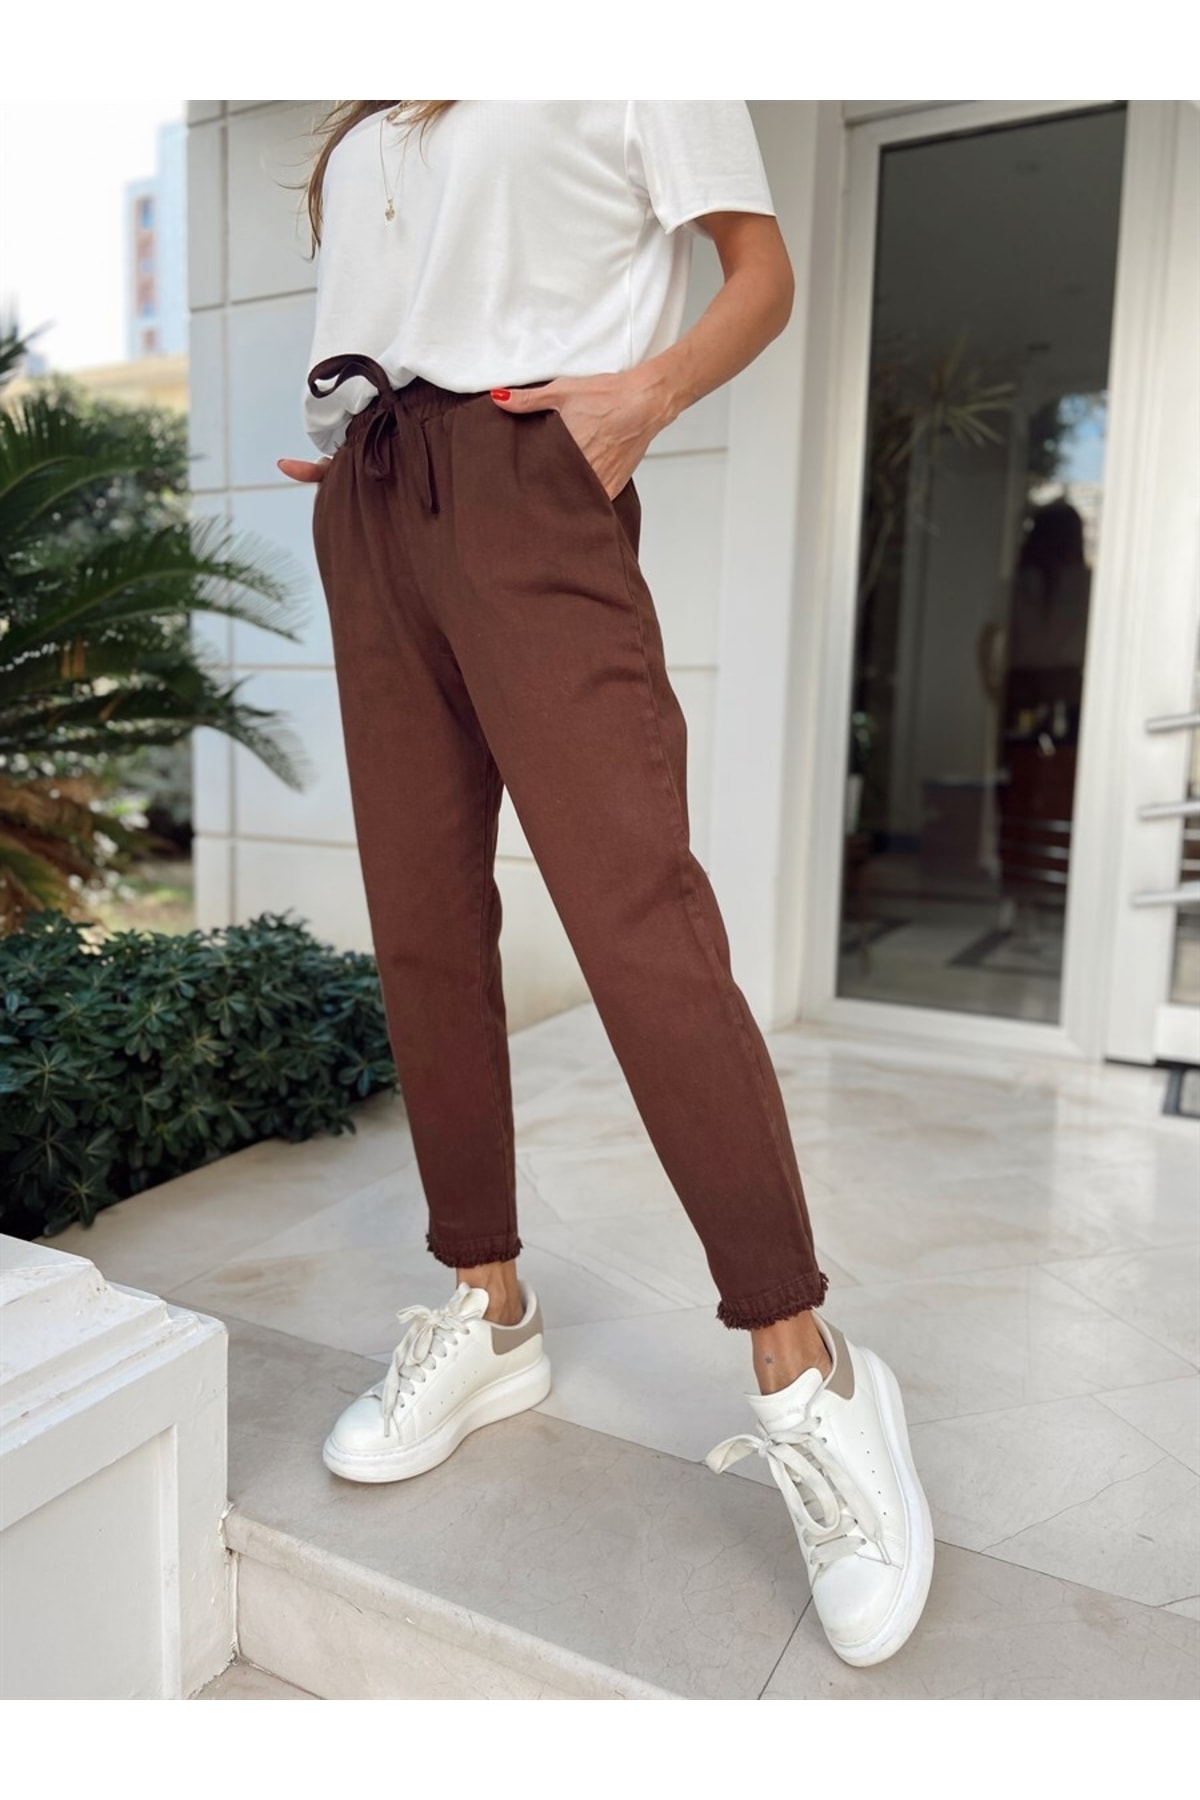 Maldia Shop Kadın Beli Lastikli Paçası Püskül Detay Parça Boya Gabardin Kahverengi Pantolon